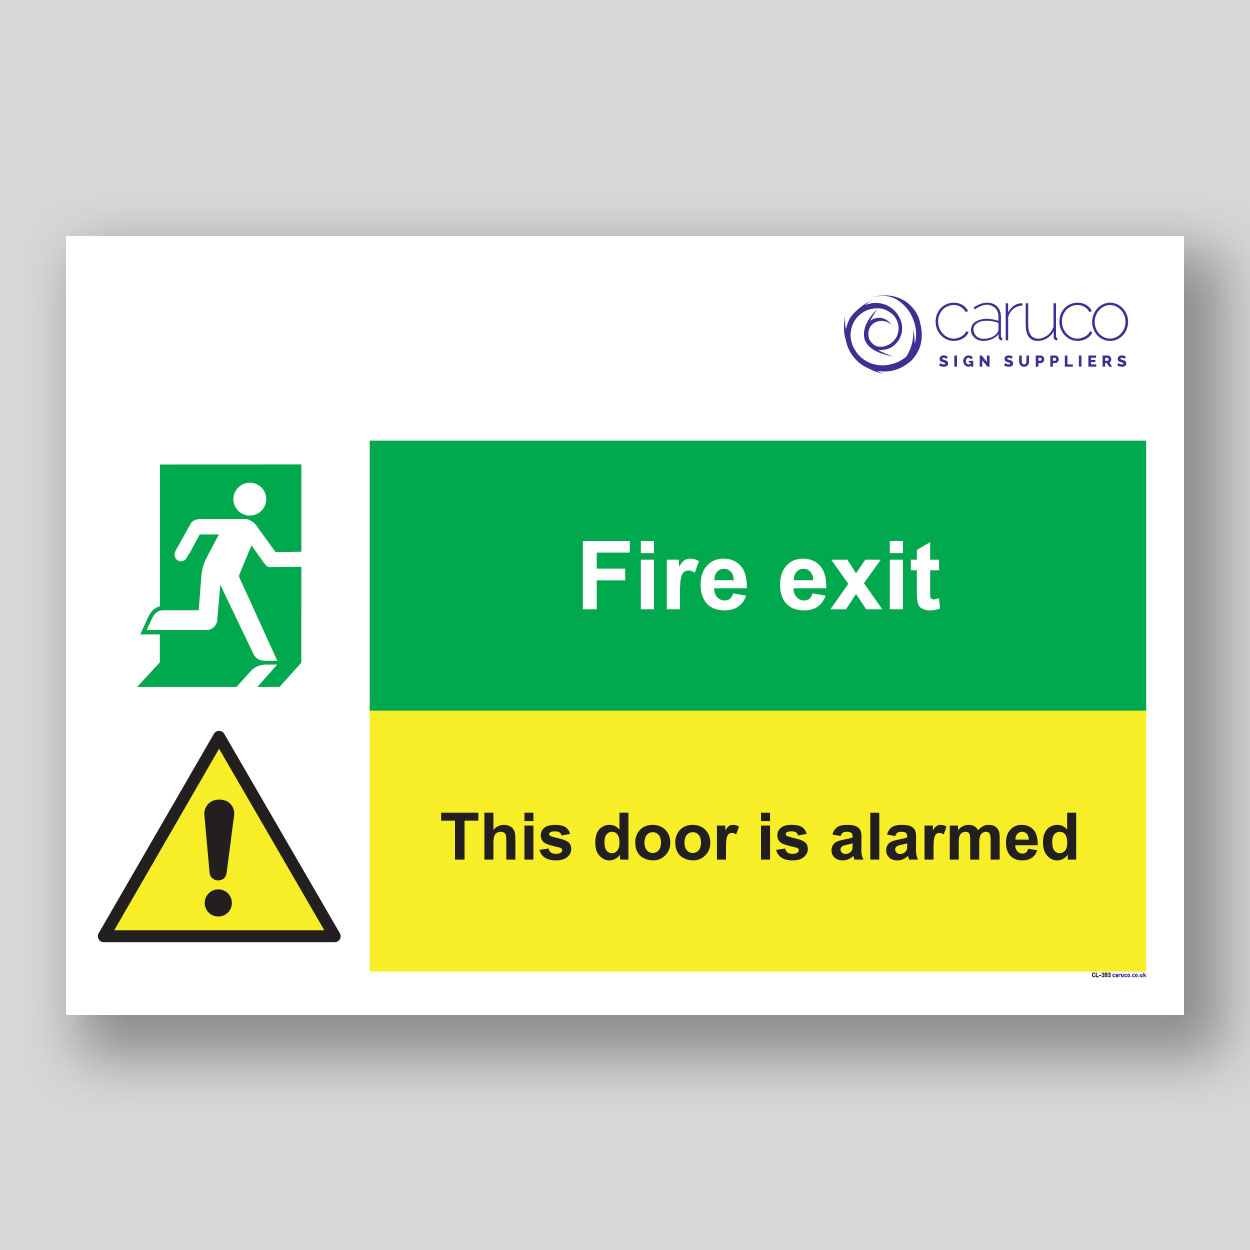 CL-383 Fire exit - This door is alarmed